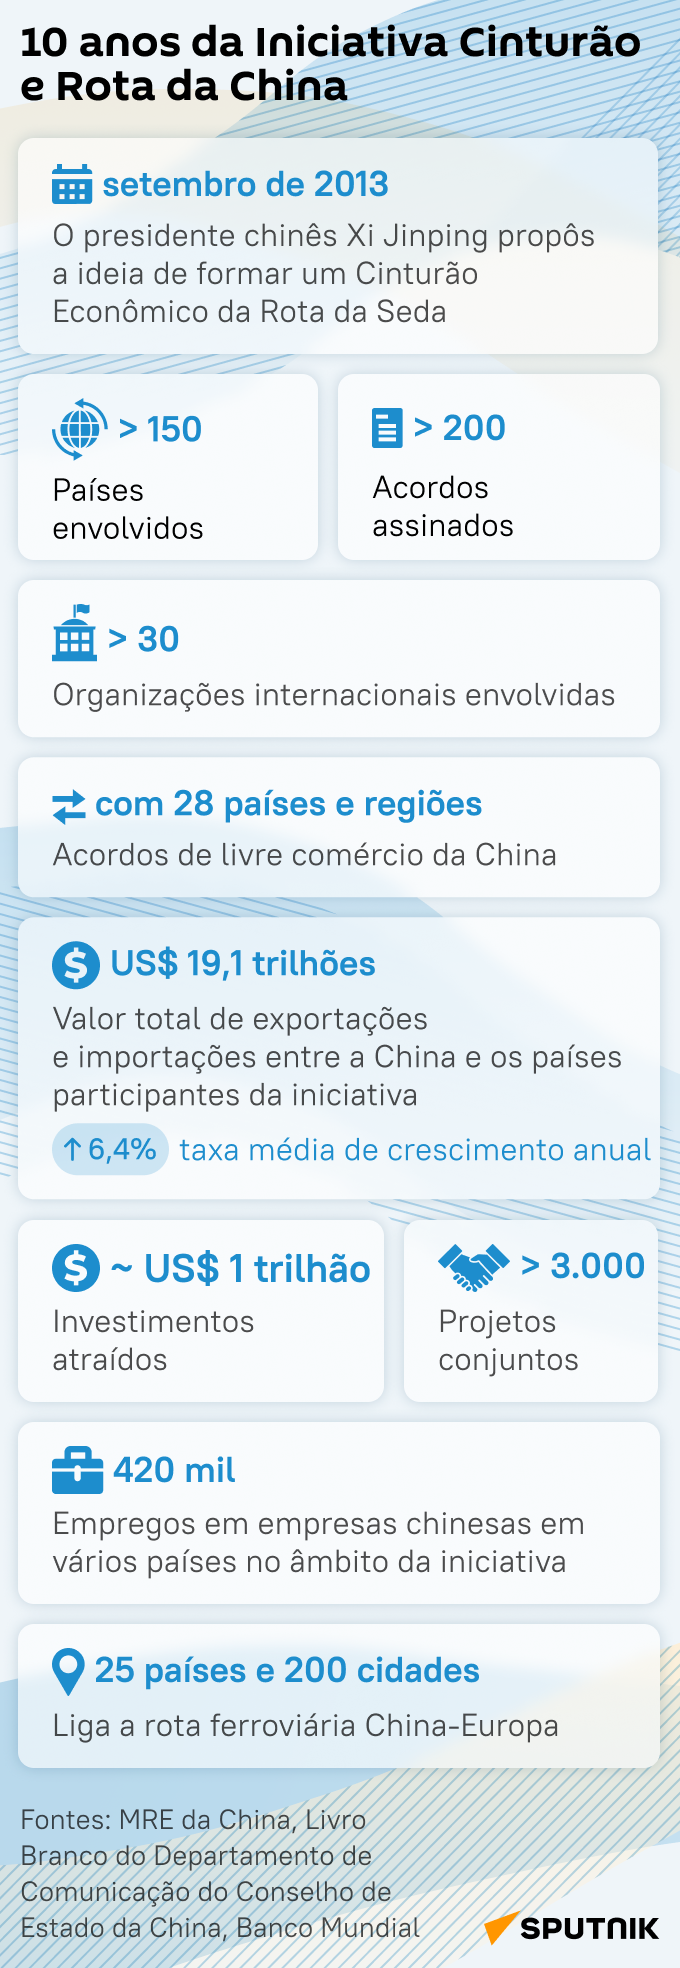 Conheça Cinturão e Rota, iniciativa chinesa que completa 10 anos - Sputnik Brasil